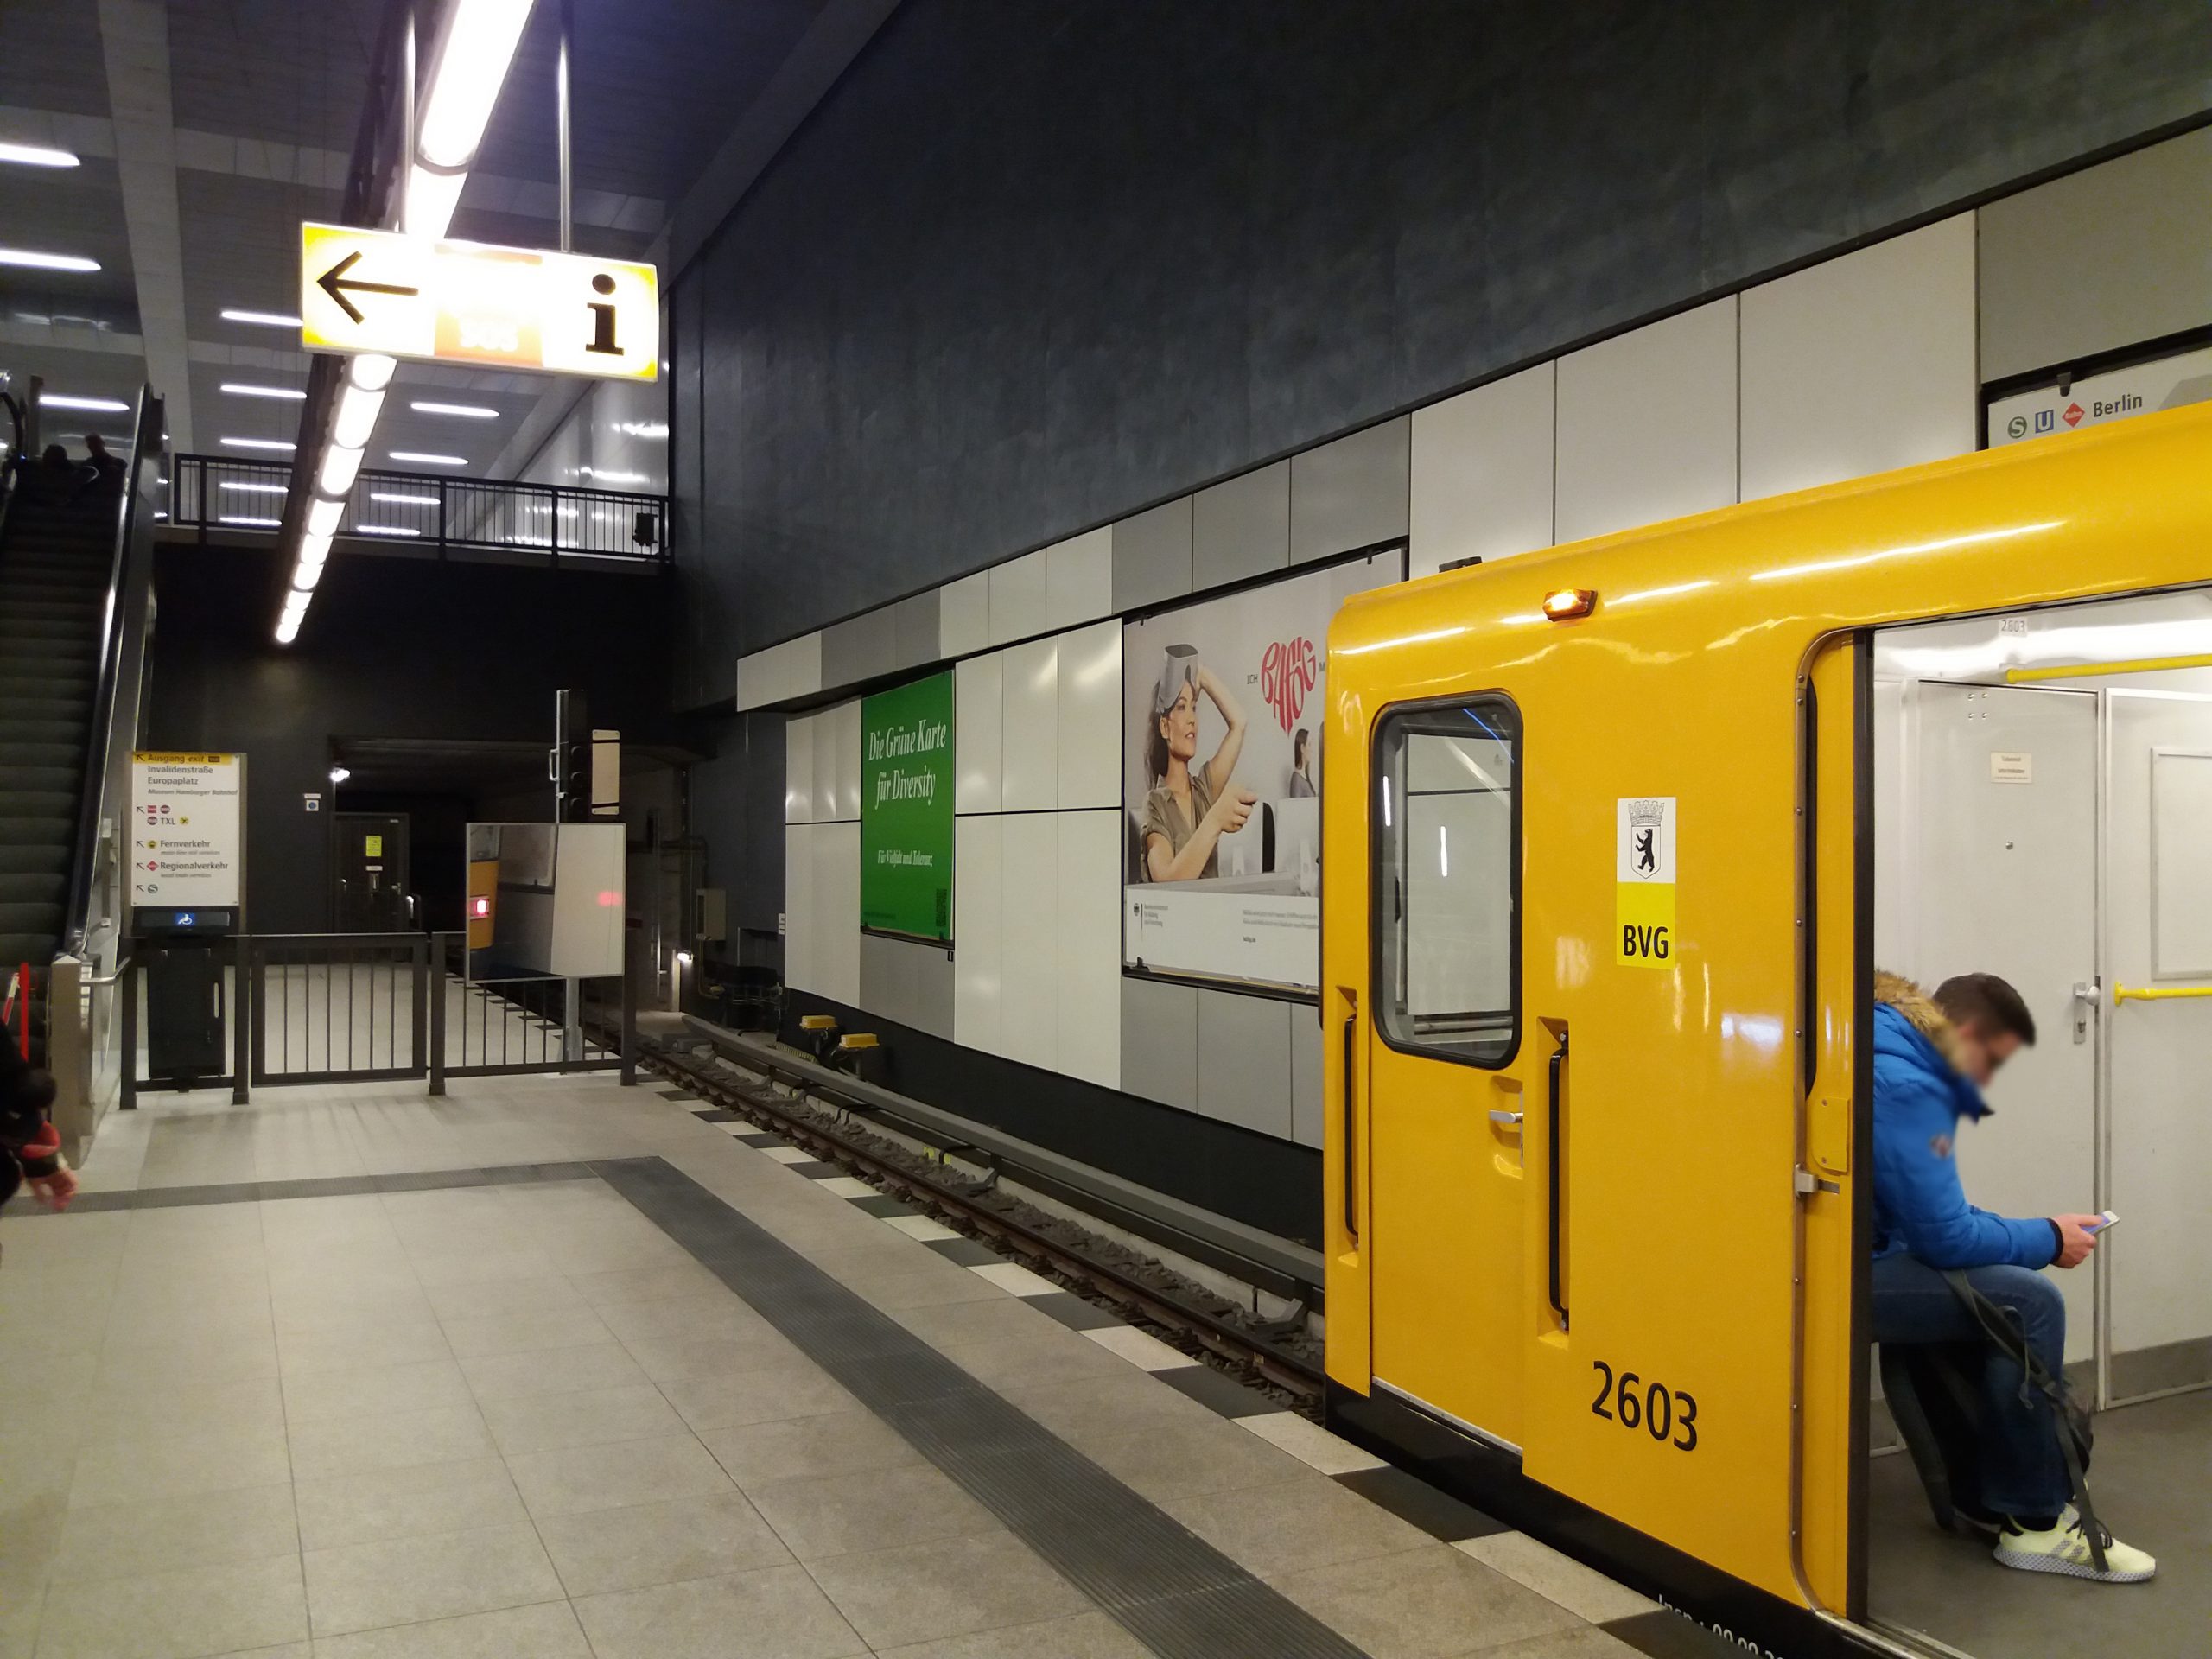 Grüne Karte für Diversity am Berliner Hauptbahnhof